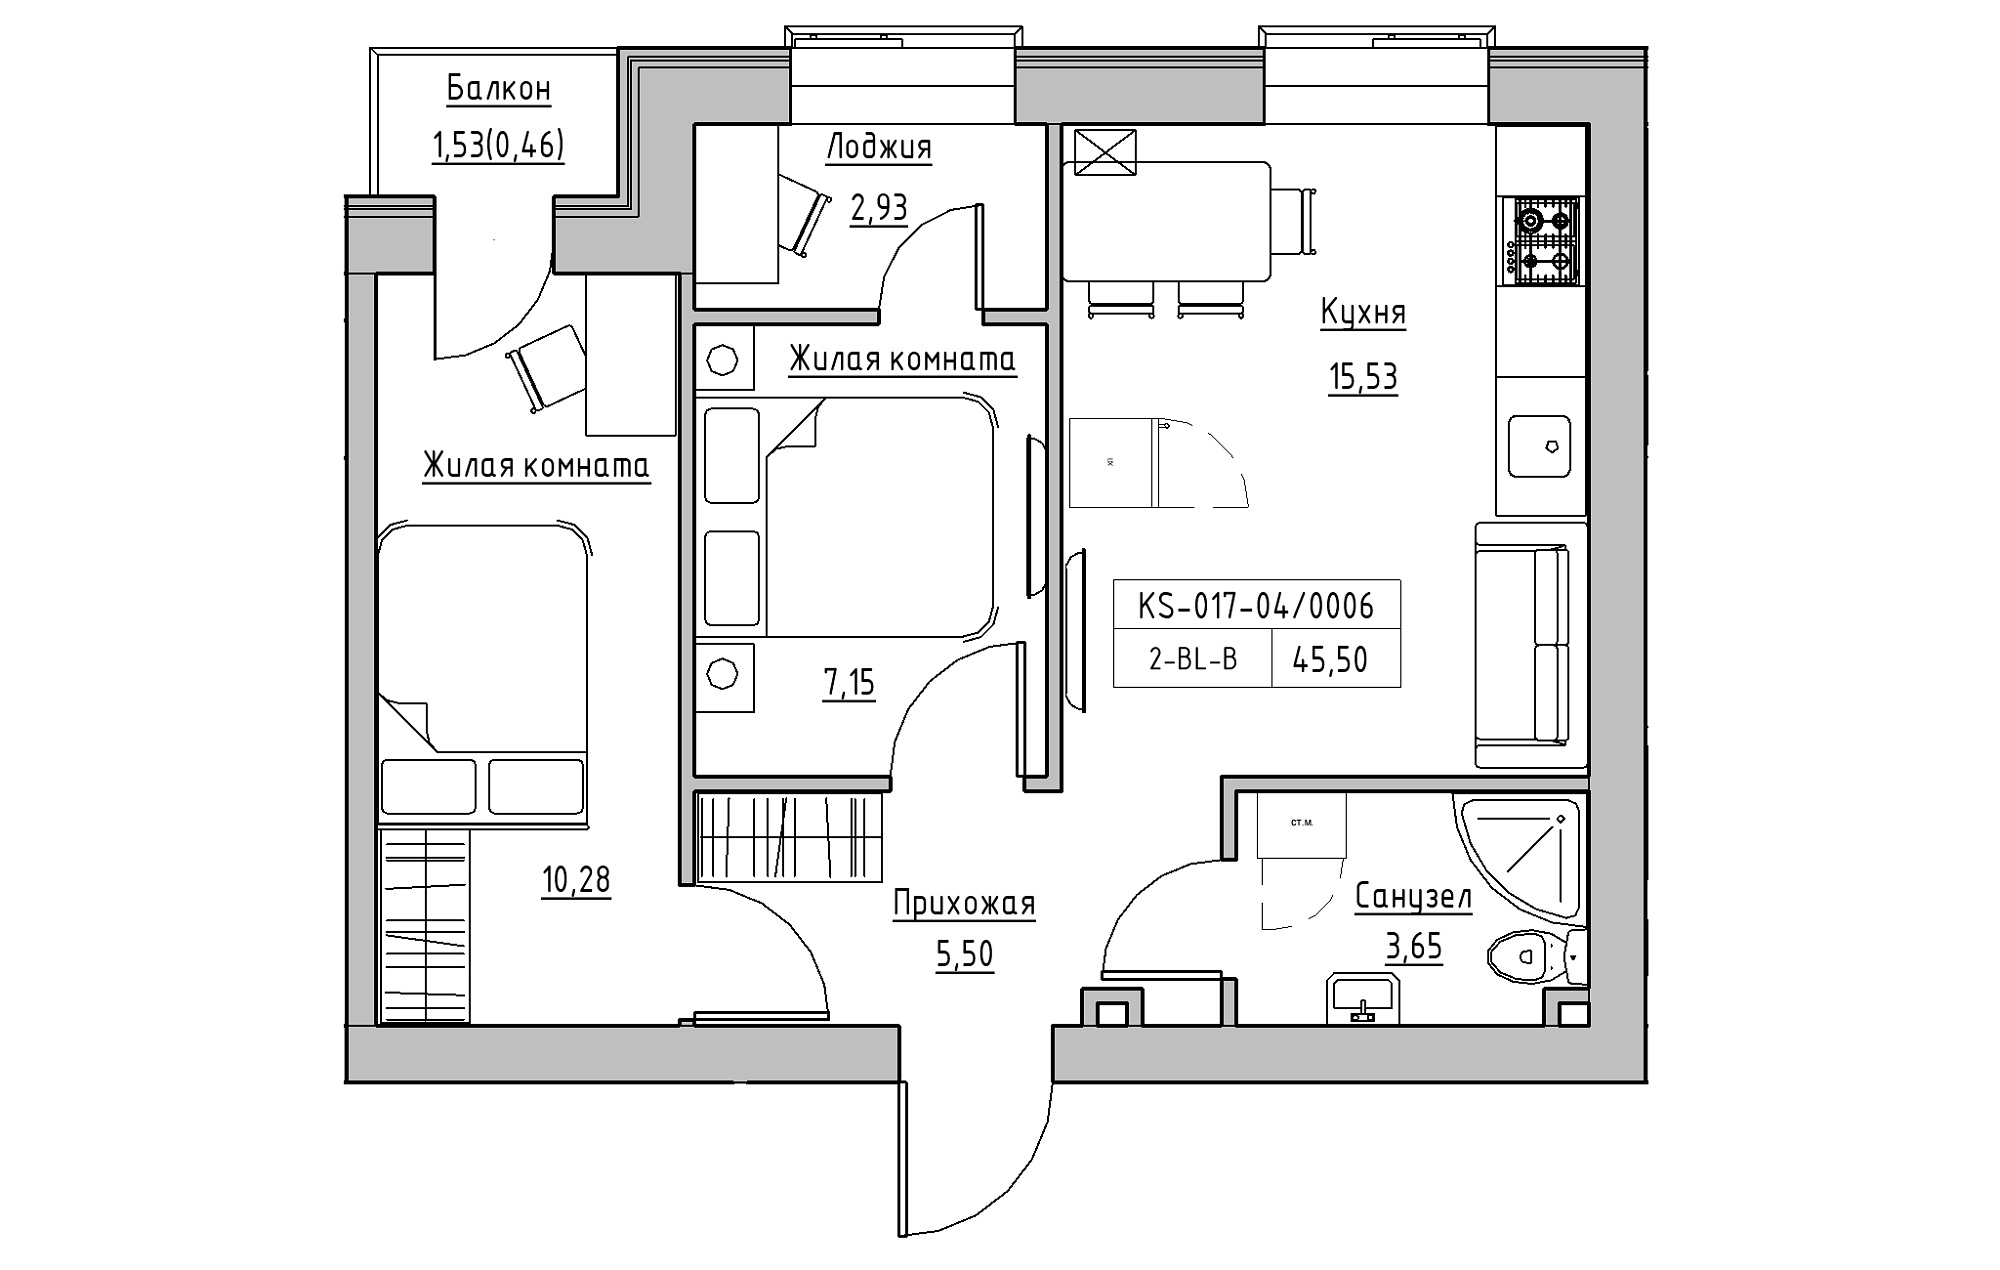 Планування 2-к квартира площею 45.5м2, KS-017-04/0006.